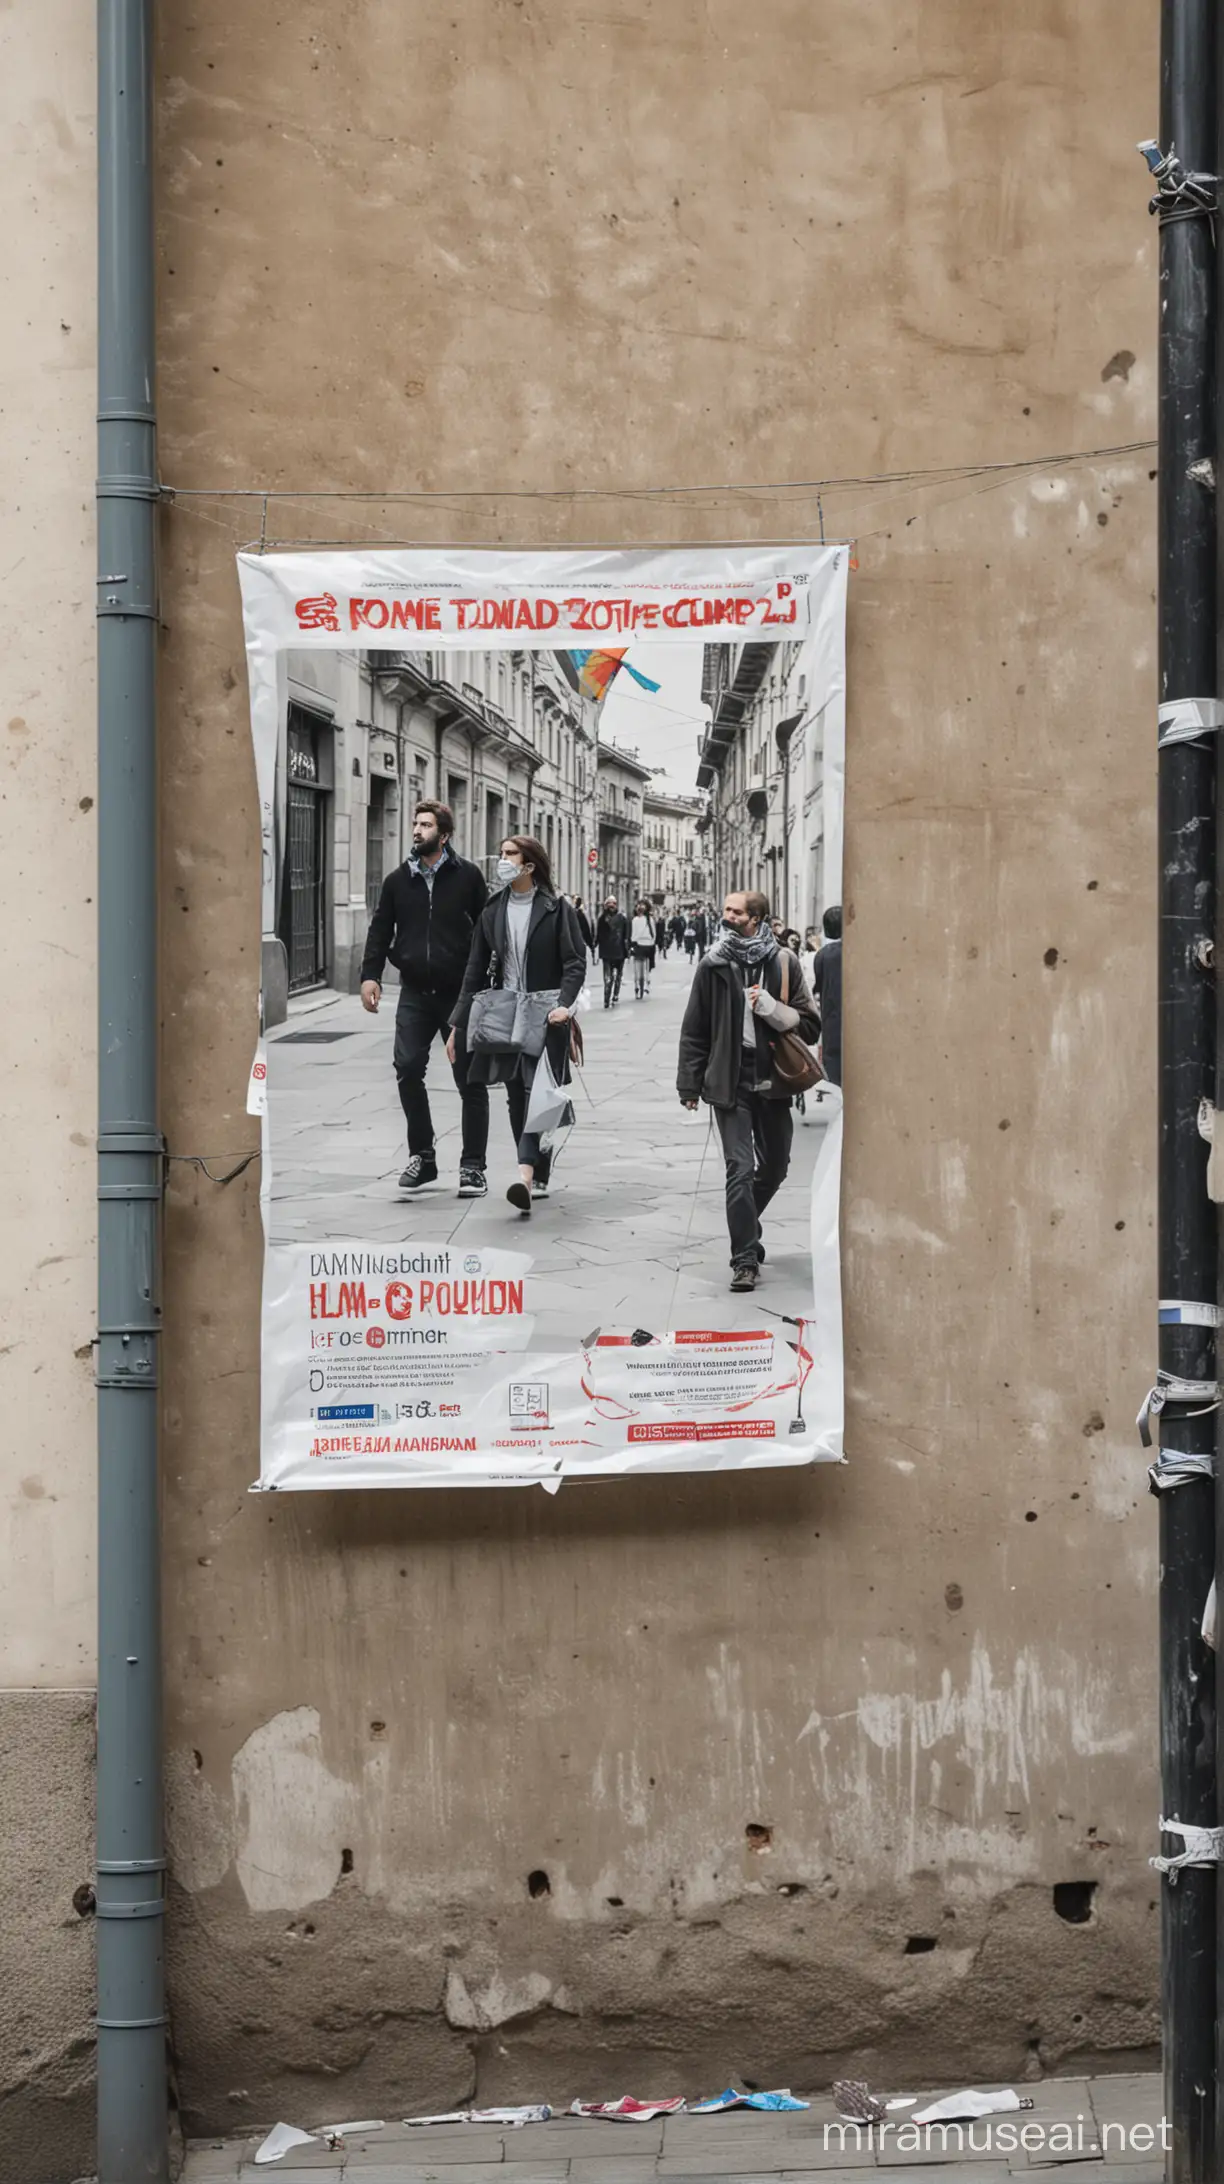 Un poster en un muro en la ciudad de Milano, ubicado detrás  de una calle altamente concurrida, de fondo personas caminando el poster con una foto de milano